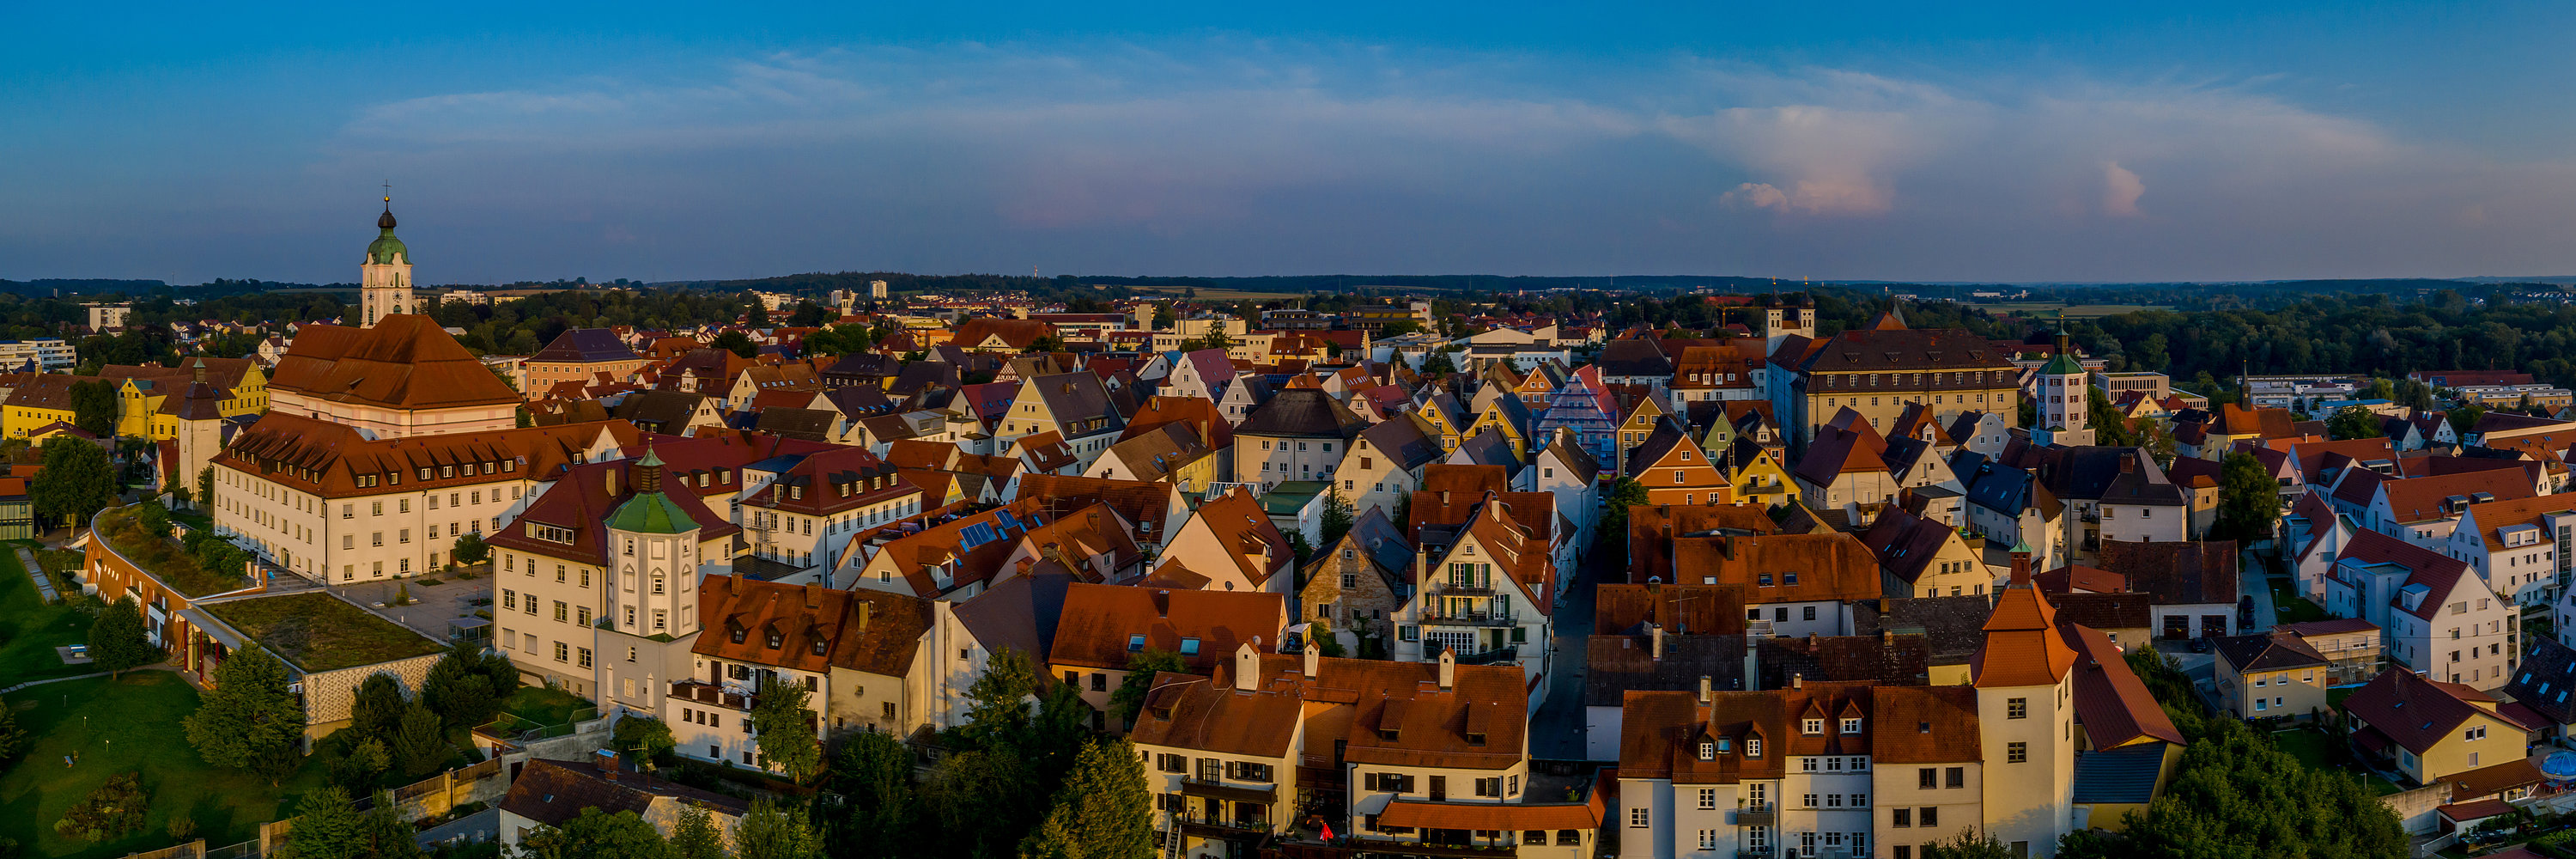 Panorama. photo: Philipp Röger für die Stadt Günzburg